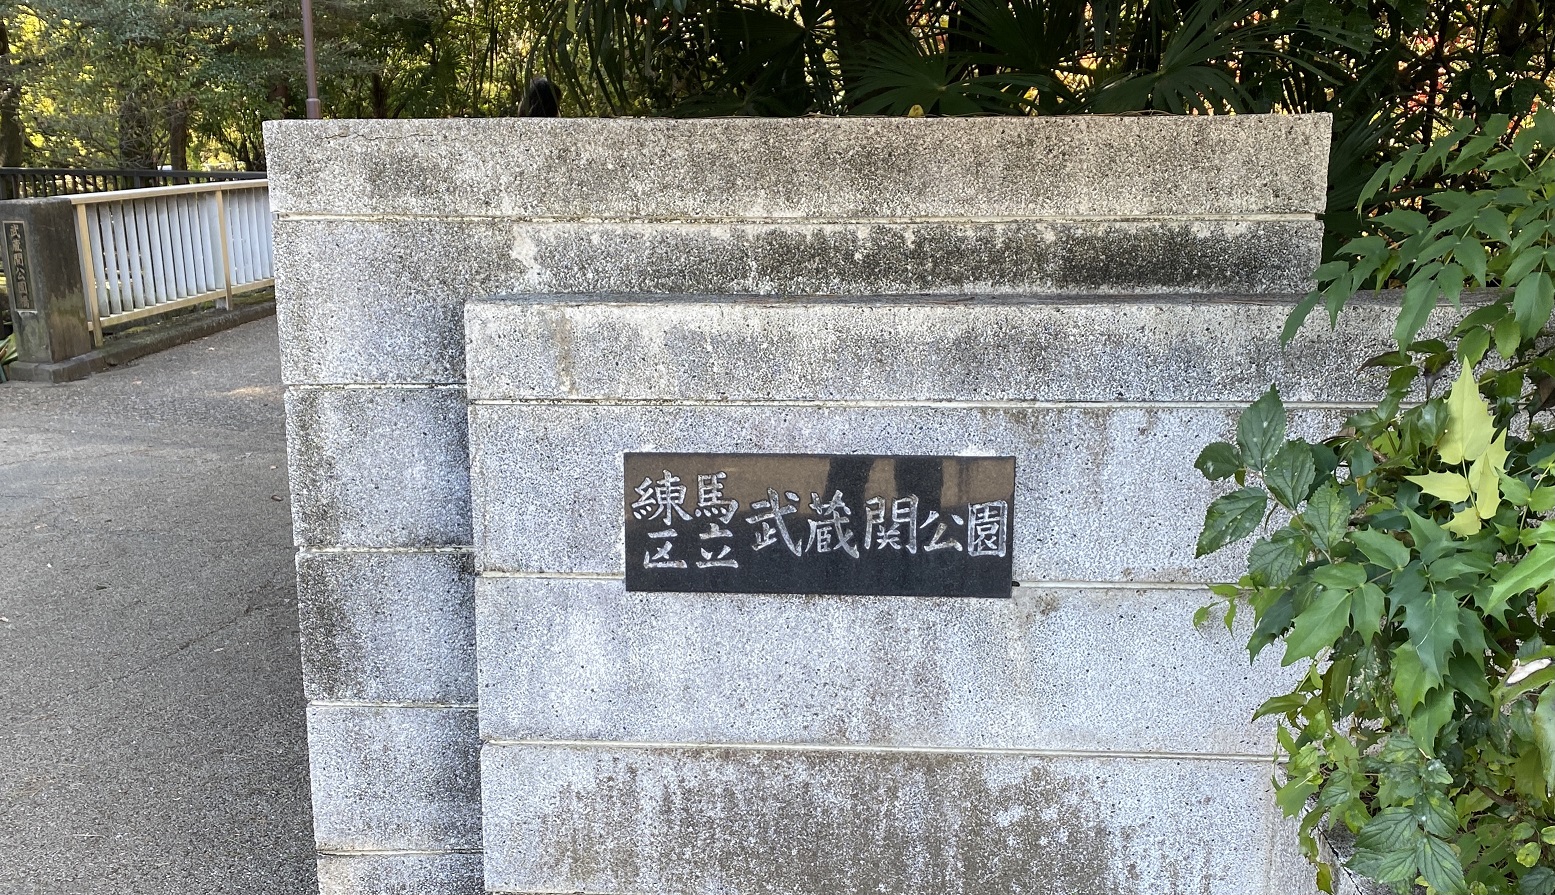 練馬区立武蔵関公園-練馬区-東京都